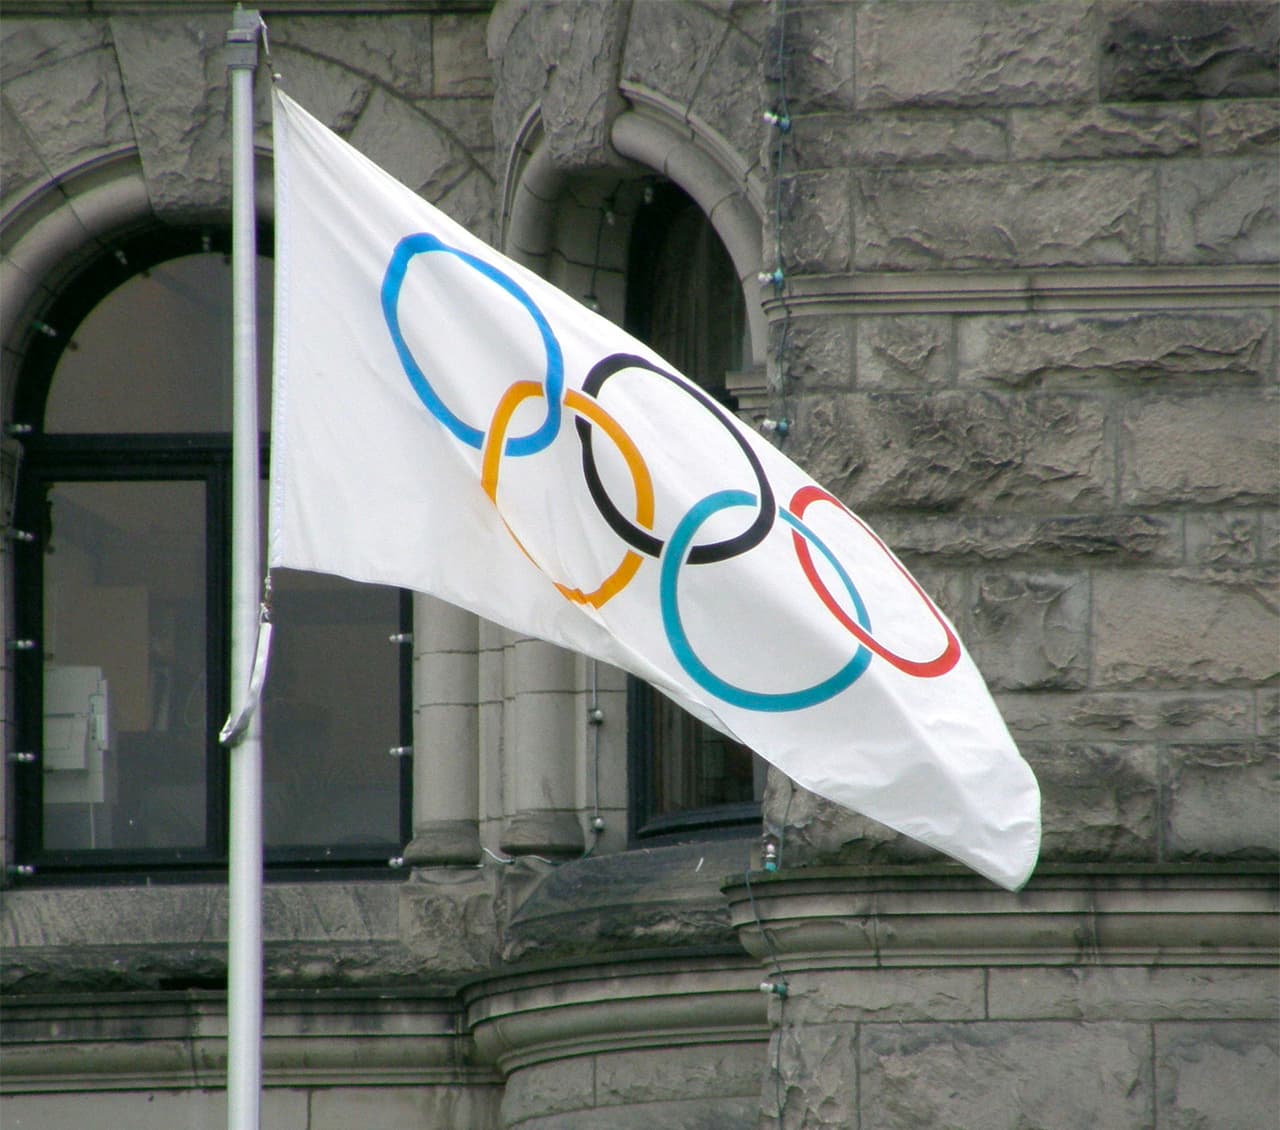 Bandera con el símbolo de los Juegos Olímpícos.